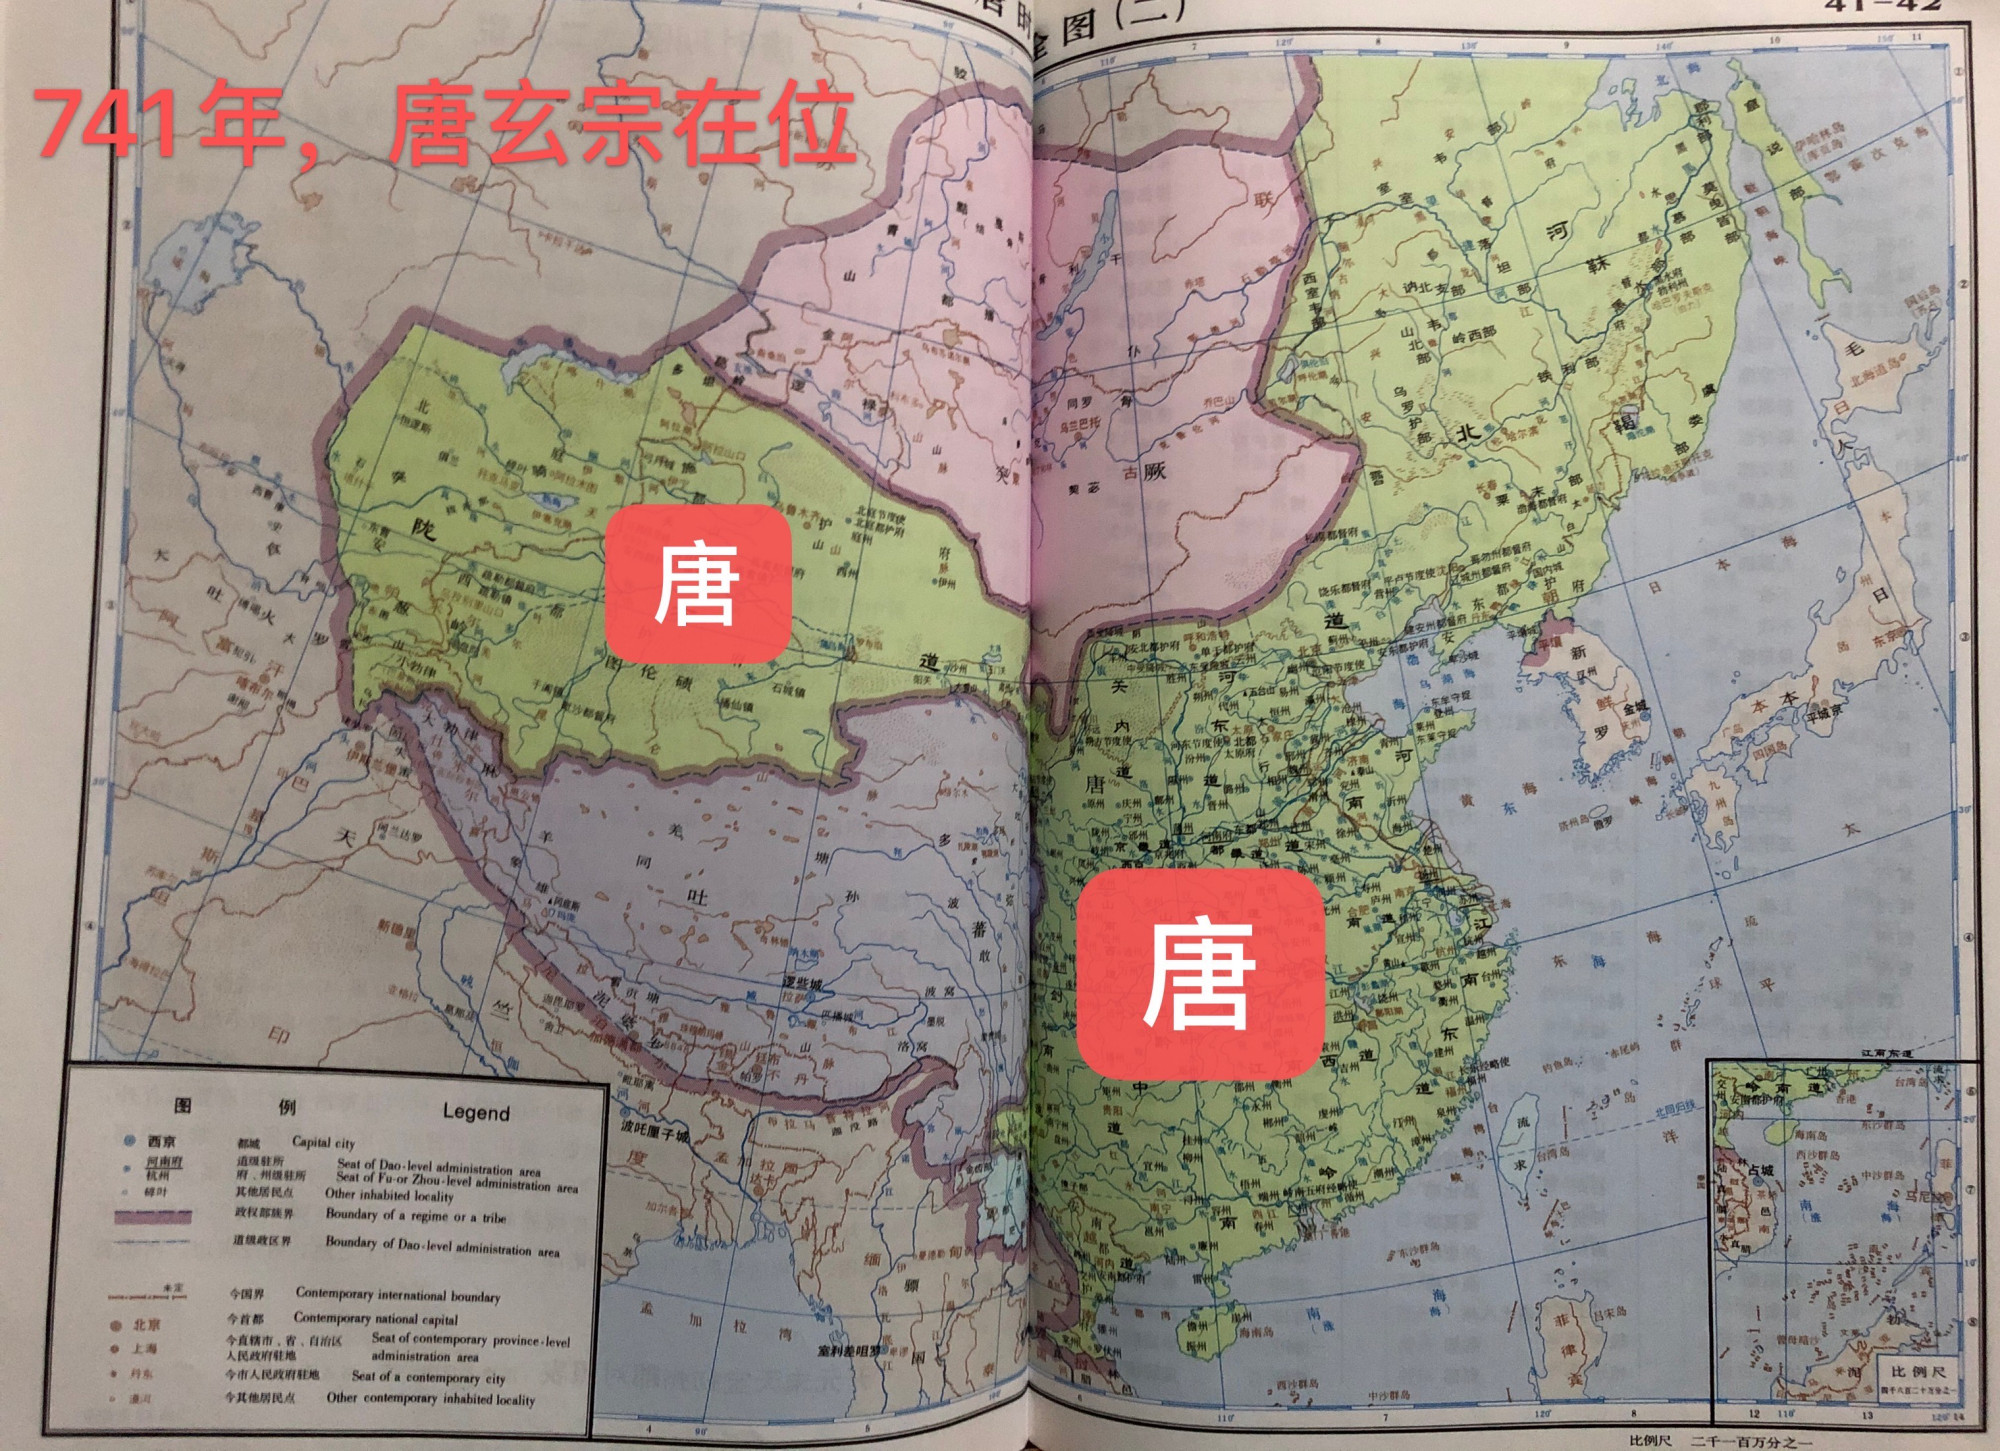 三张唐朝不同时期的地图越看越心酸安史之乱带来的影响太大